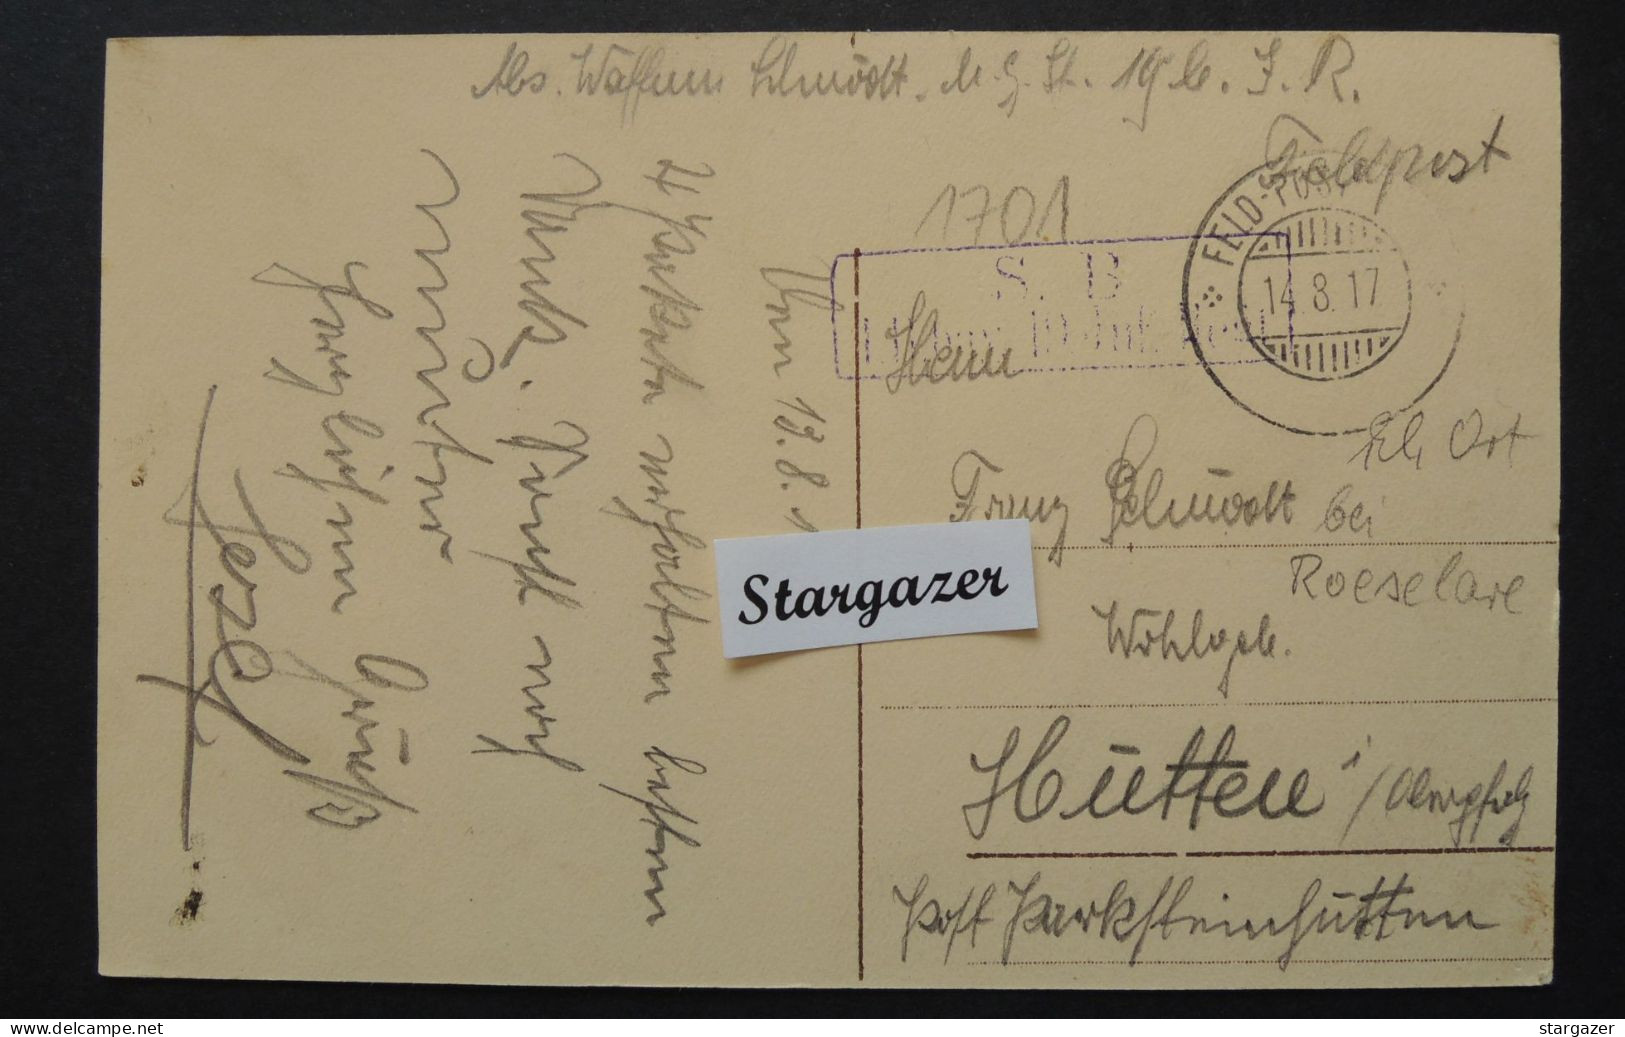 Postkaart "Rumbeke - Plaats", 1917, Feldpost, Geanimeerd (Rumbeke Bij Roeselare) - Röselare